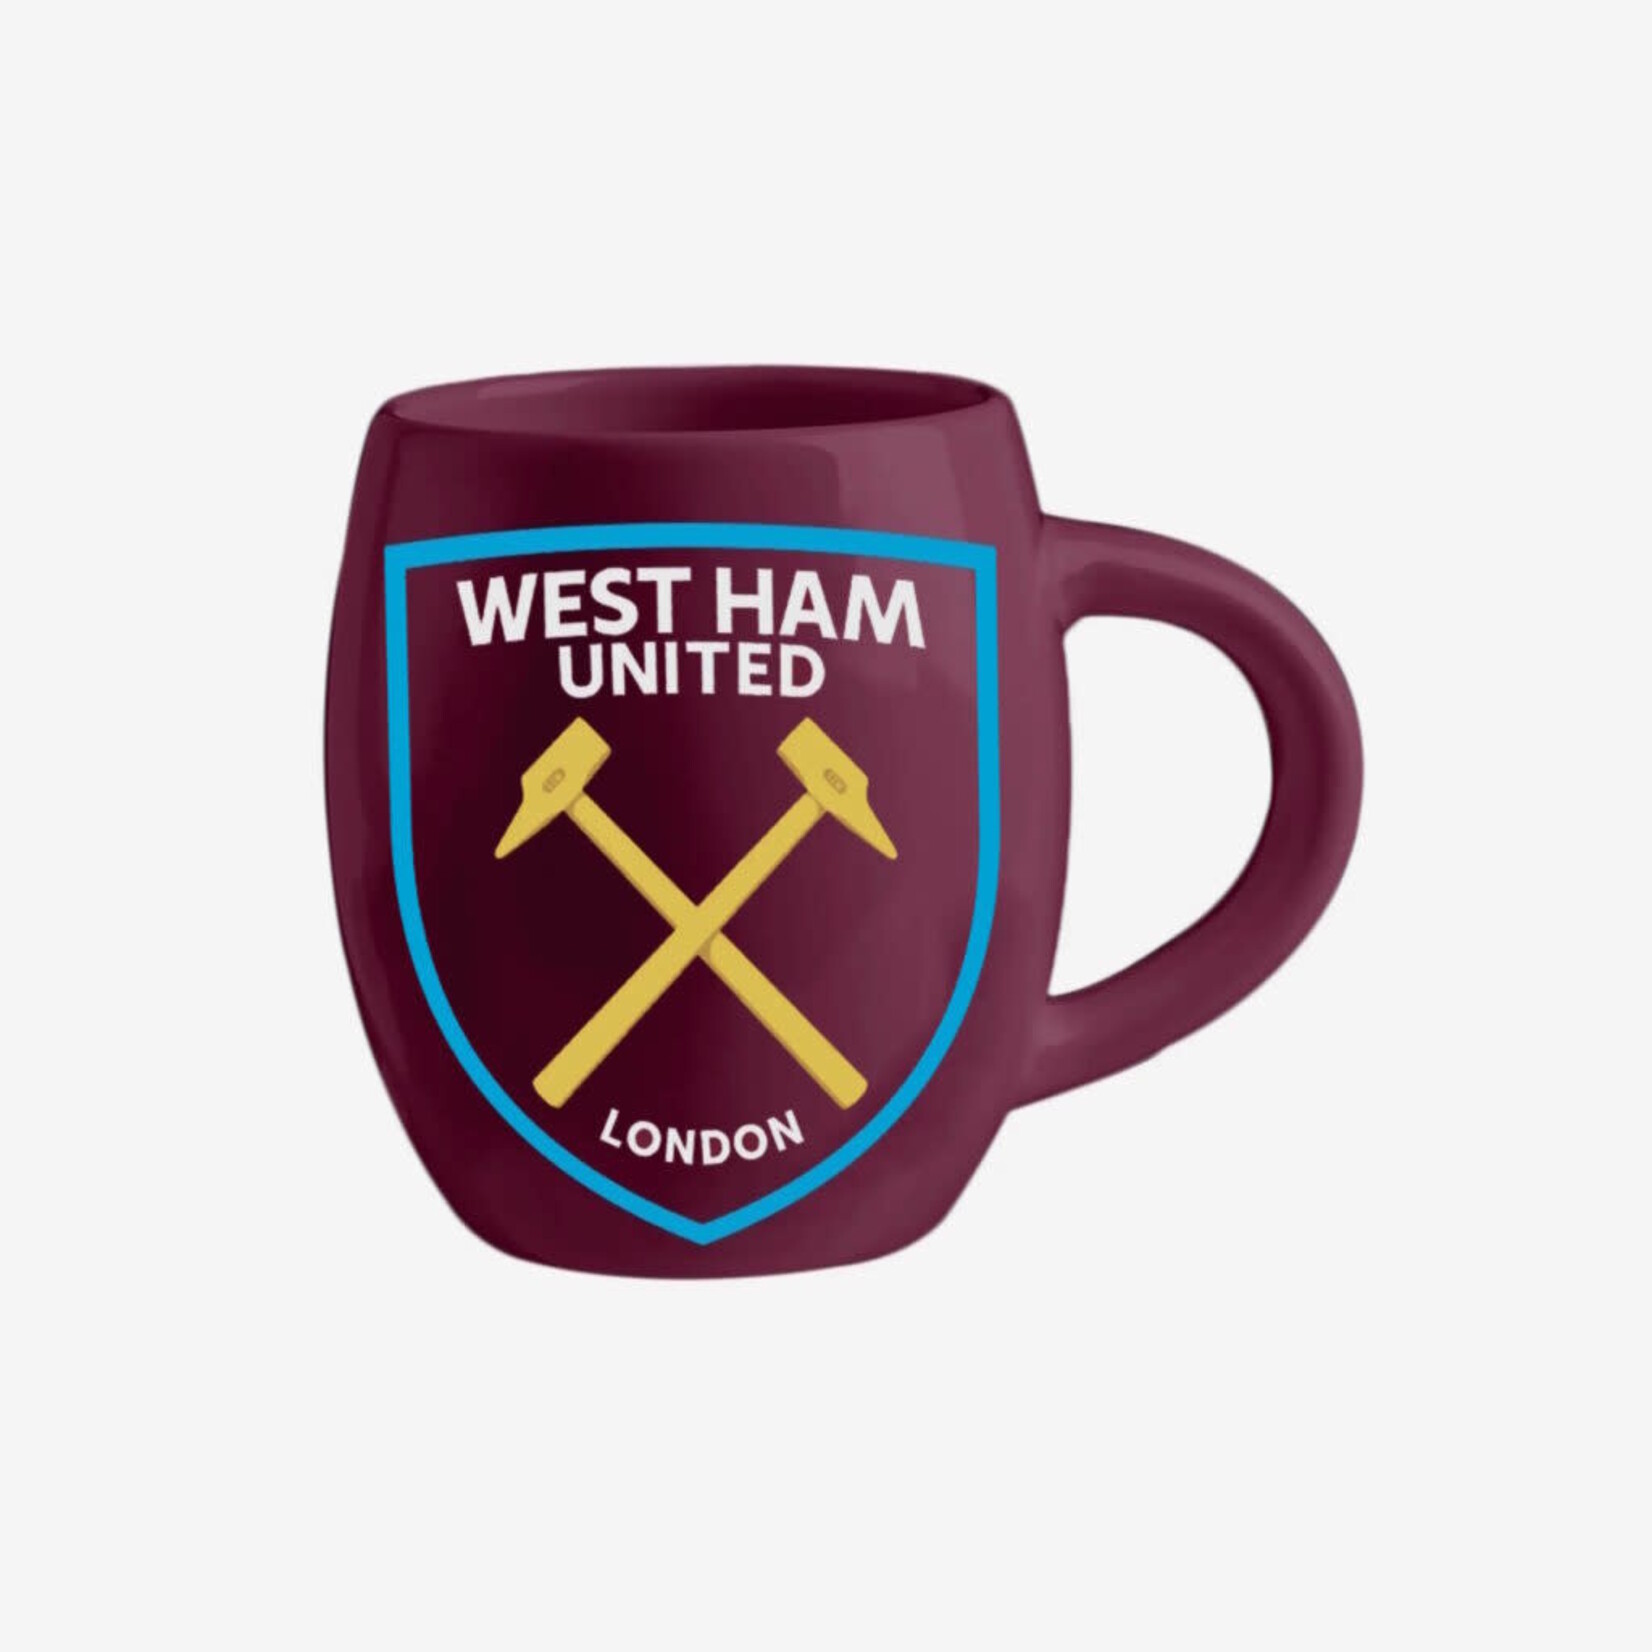 Mimi Imports West Ham United Tea Tub Mug